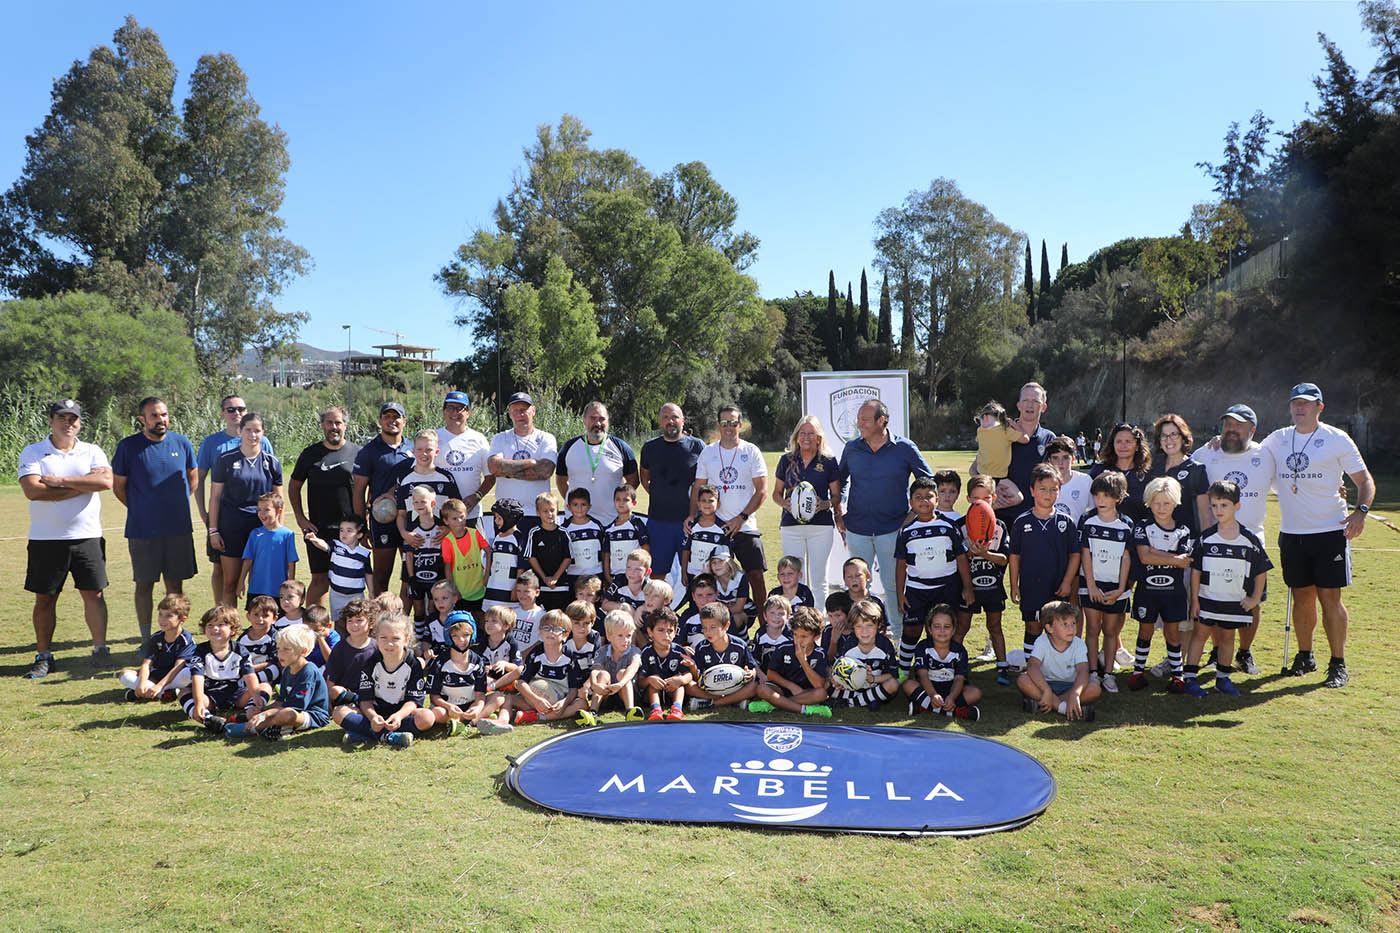 La alcaldesa subraya la proyección para la ciudad “que suponen todos los éxitos deportivos del Marbella Rugby Club” durante el acto de inauguración de su nuevo campo de entrenamiento